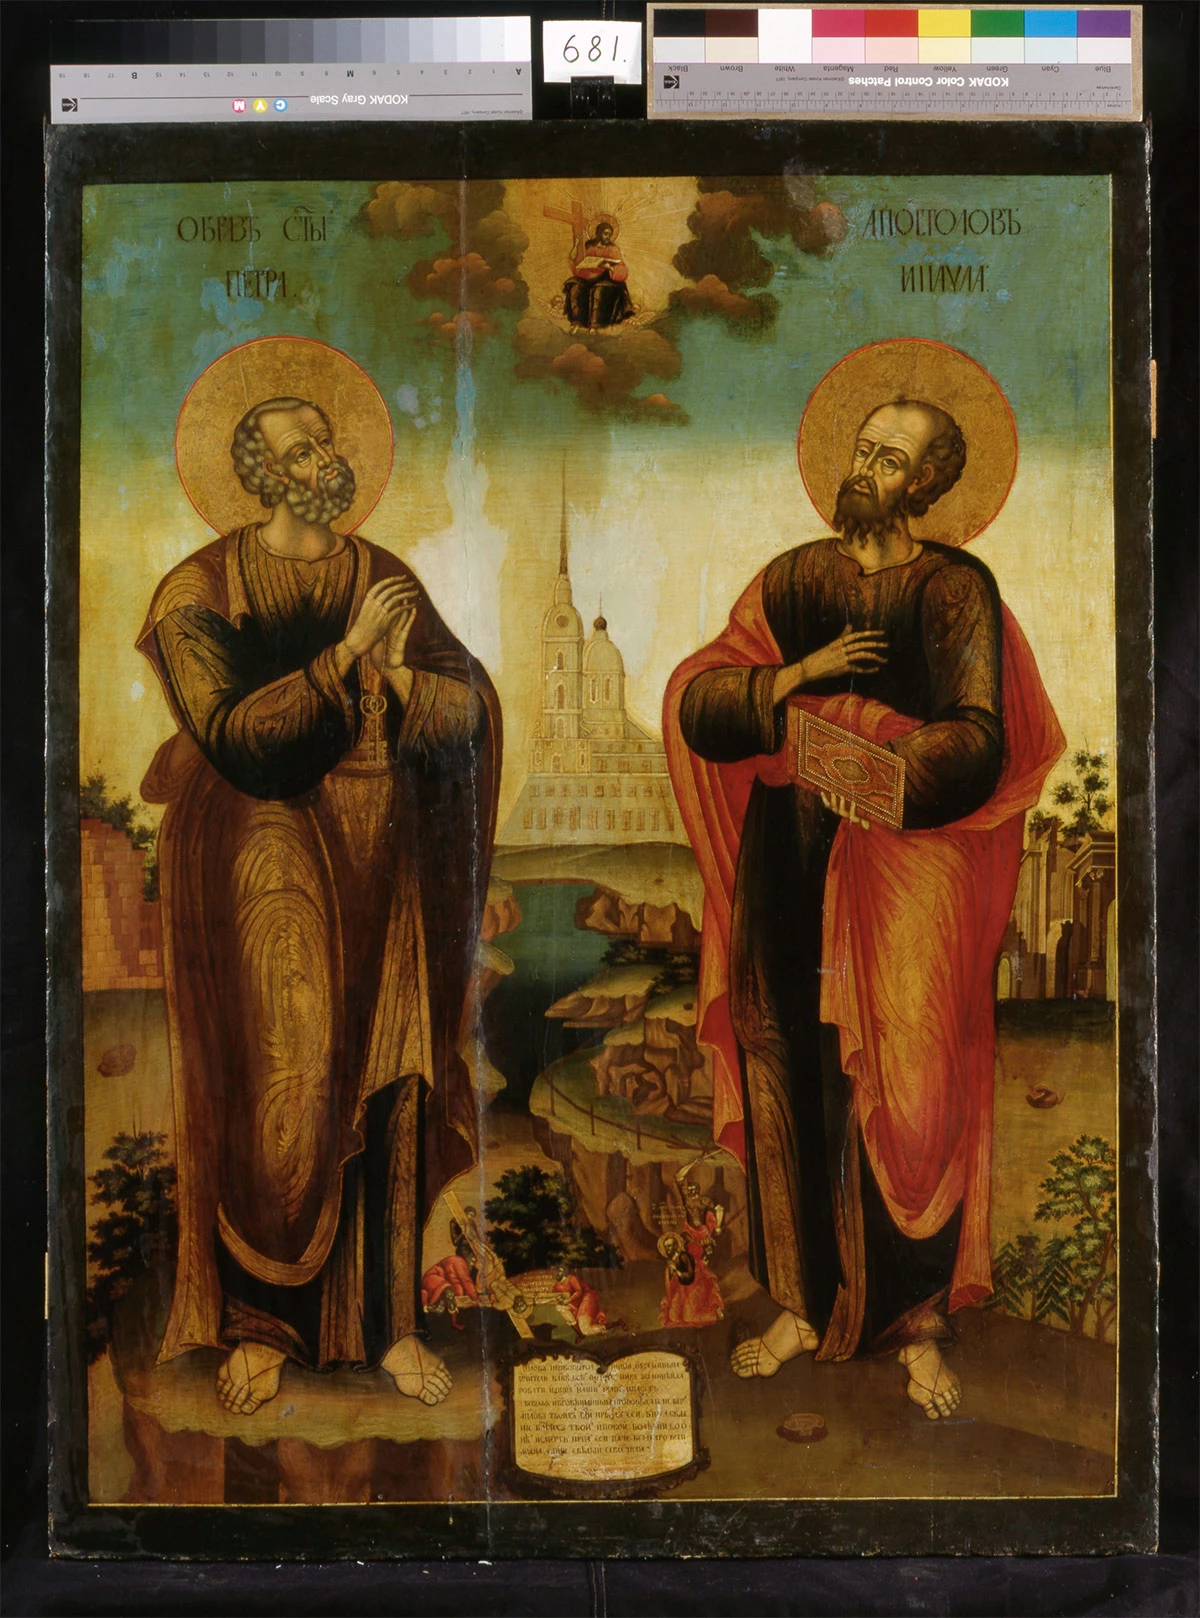 <p>Апостолы Петр и Павел, 1796г. Государственный Исторический музей, Москва</p>

<p></p>